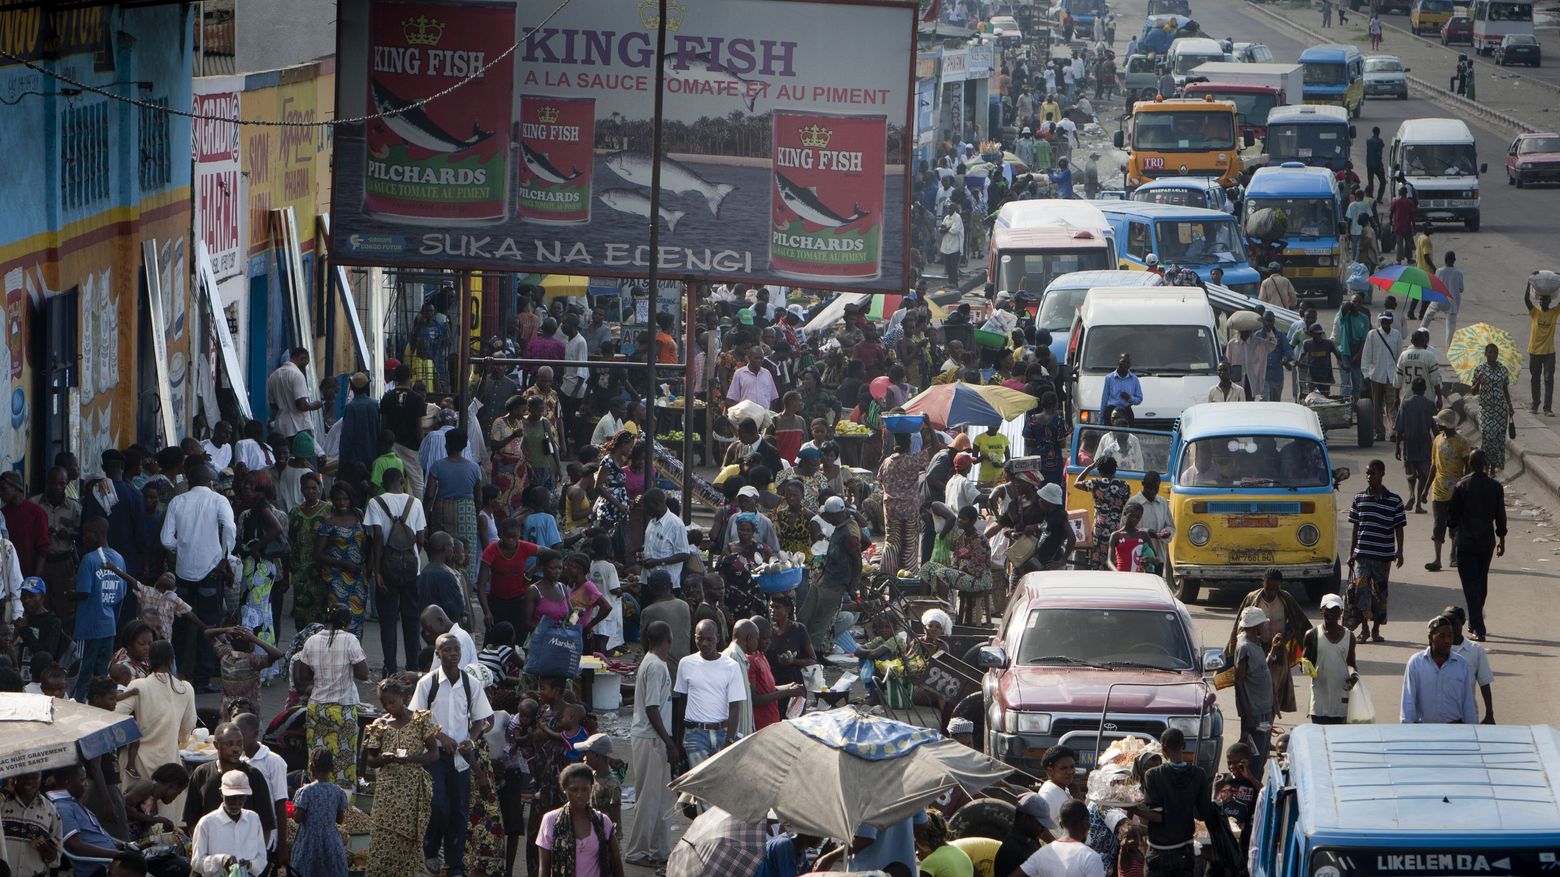 Taxistand in Kinshasa / Kongo